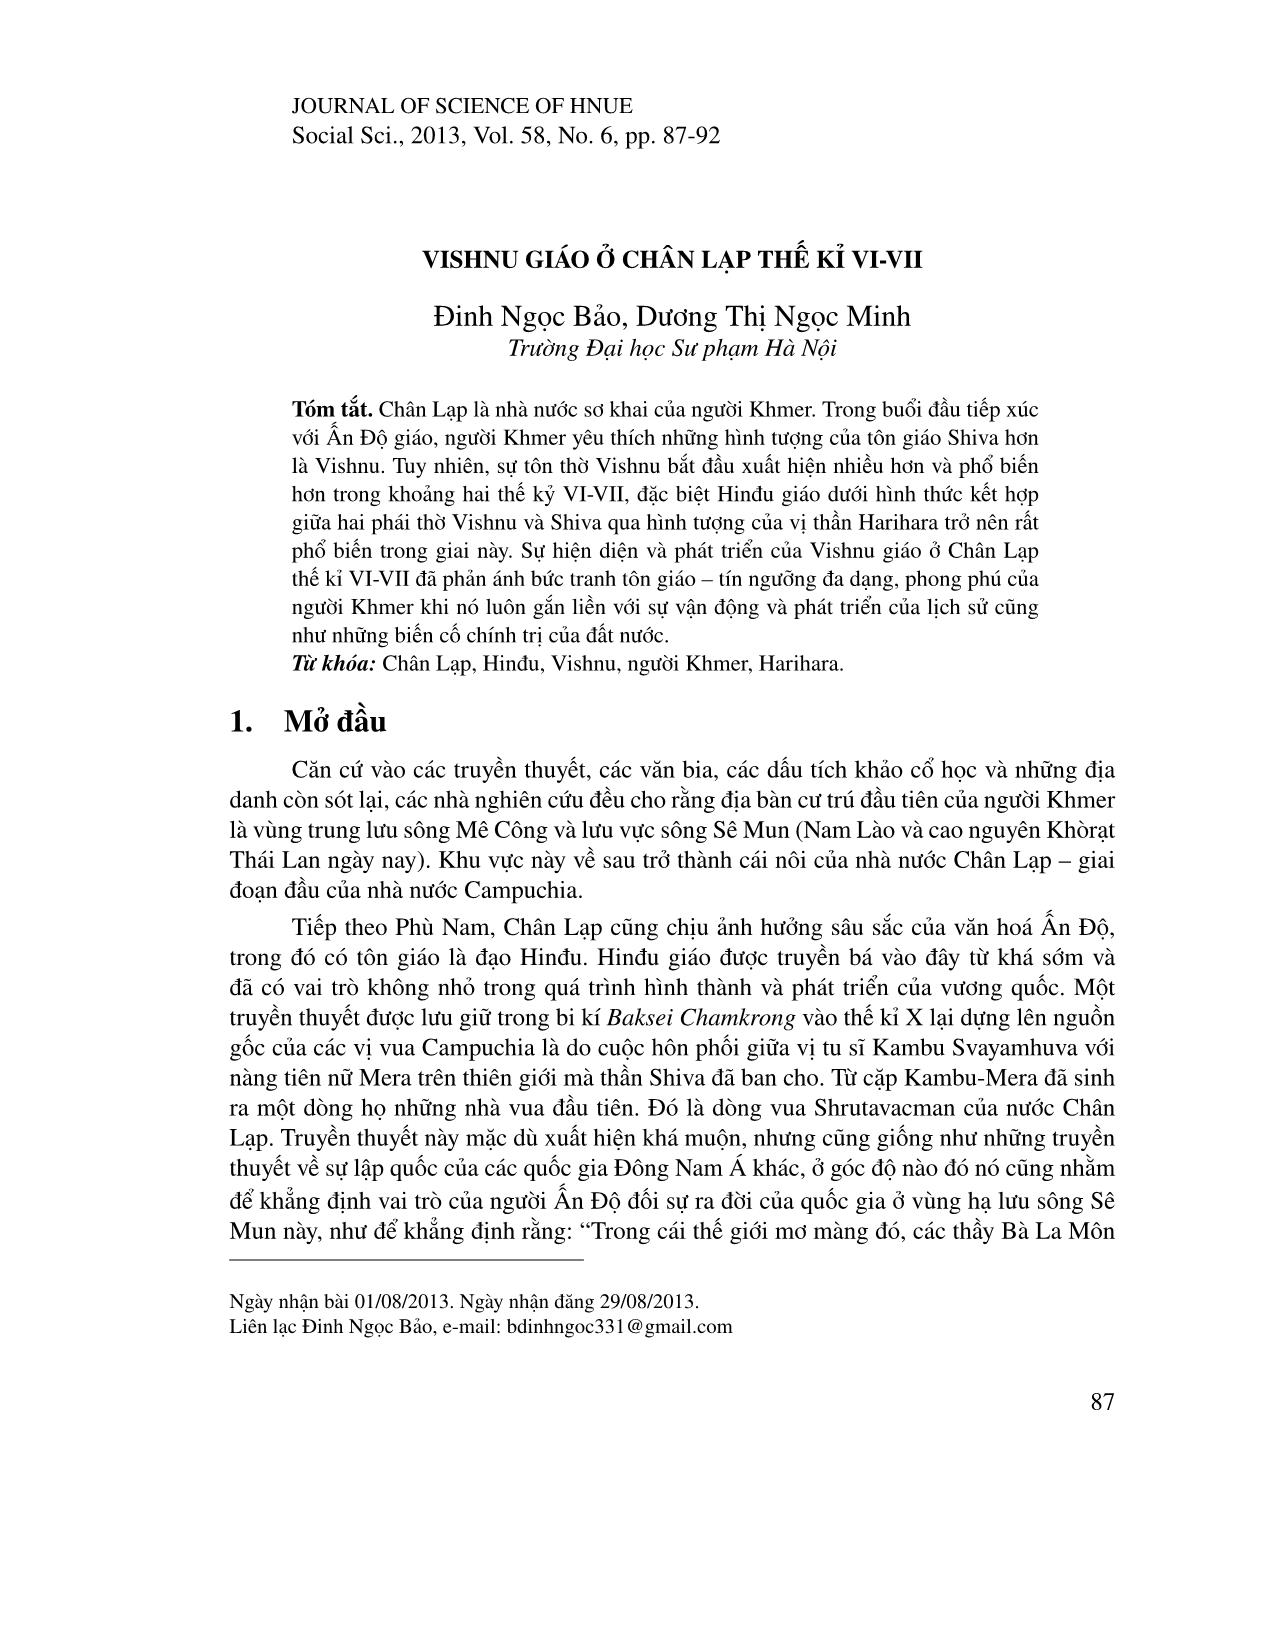 Vishnu giáo ở Chân Lạp thế kỉ VI-VII trang 1